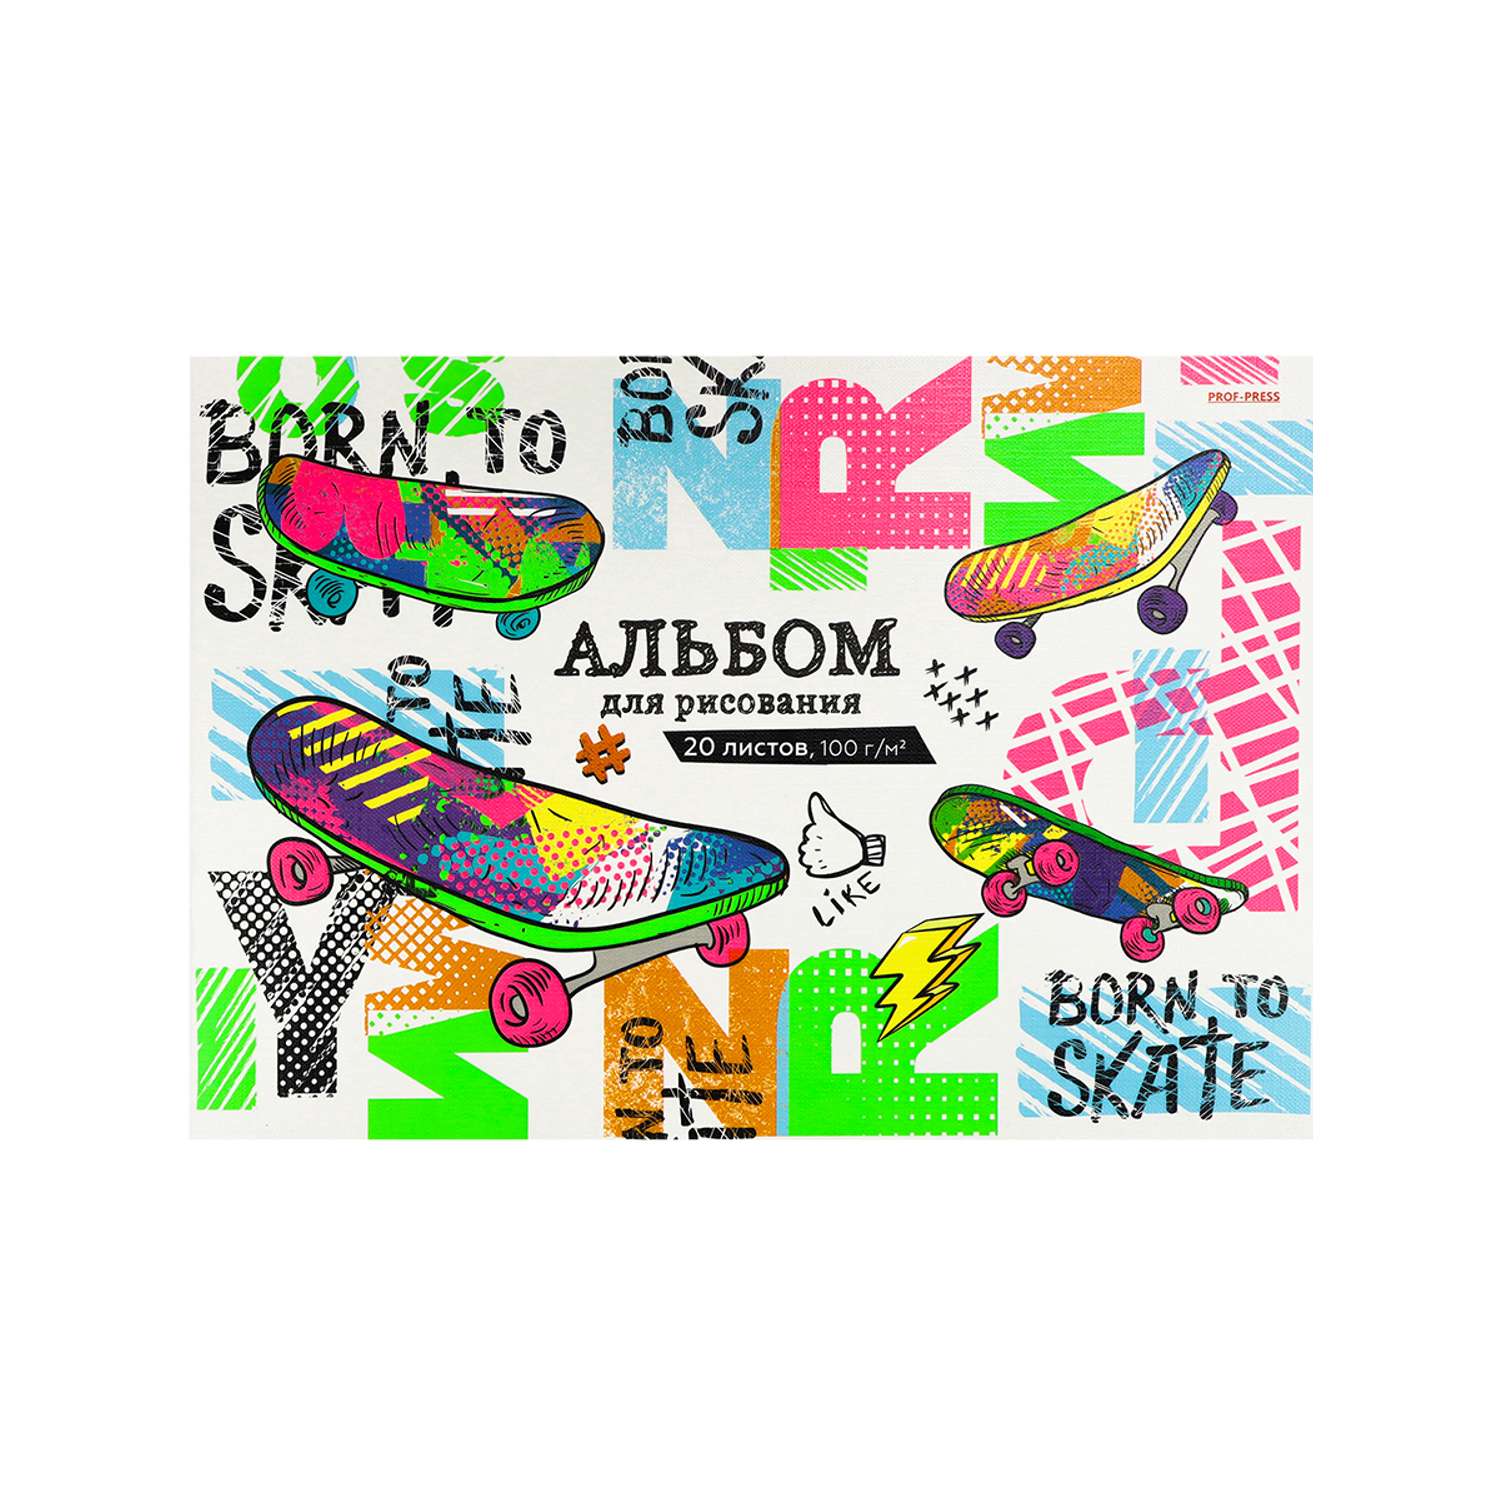 Альбом для рисования Prof-Press Разноцветные скейты А4 А4 20 листов спайка 2 шт - фото 3